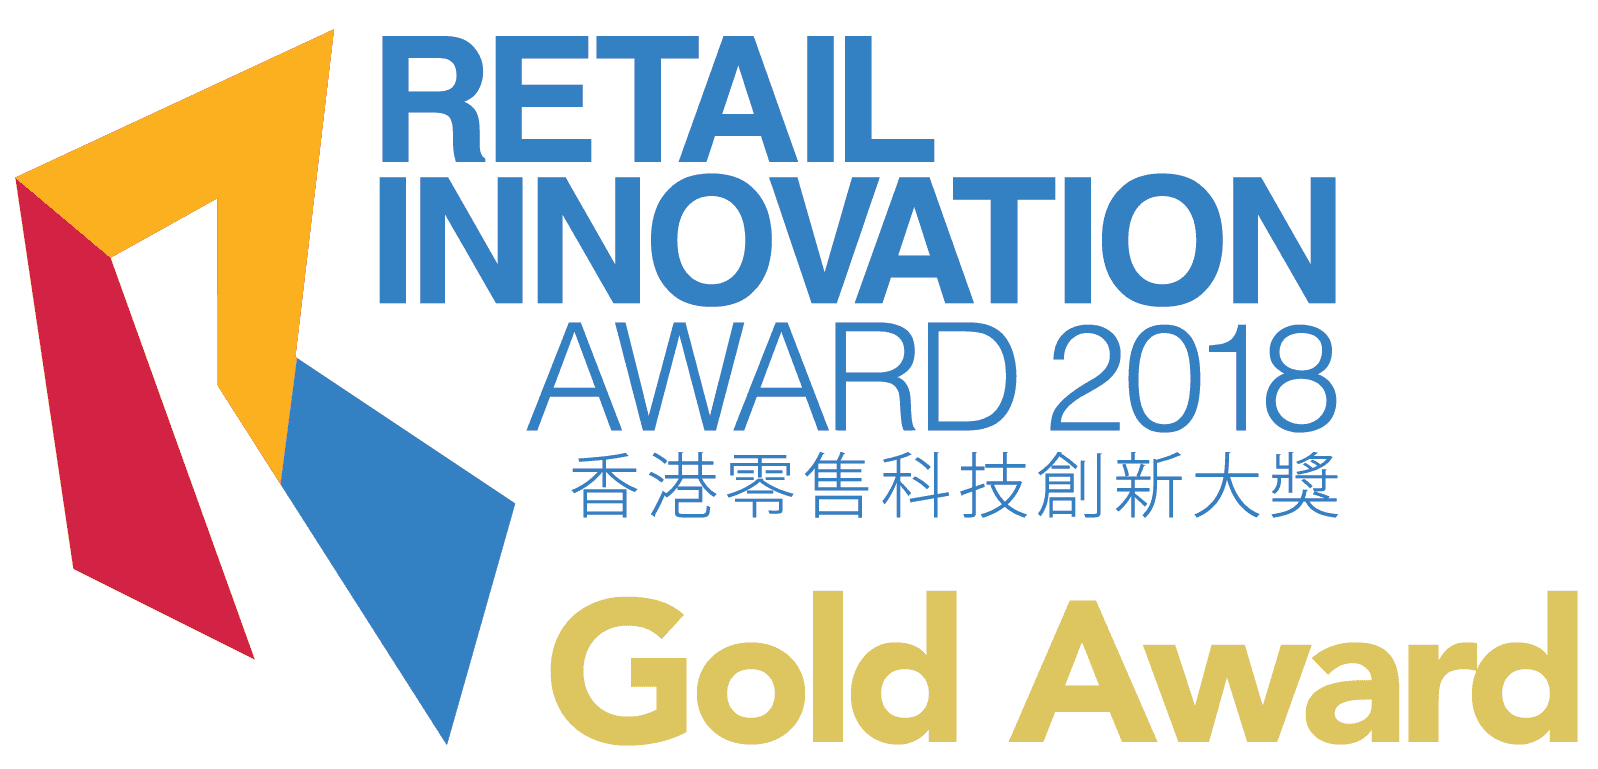  Retail Innovation Award 2018,